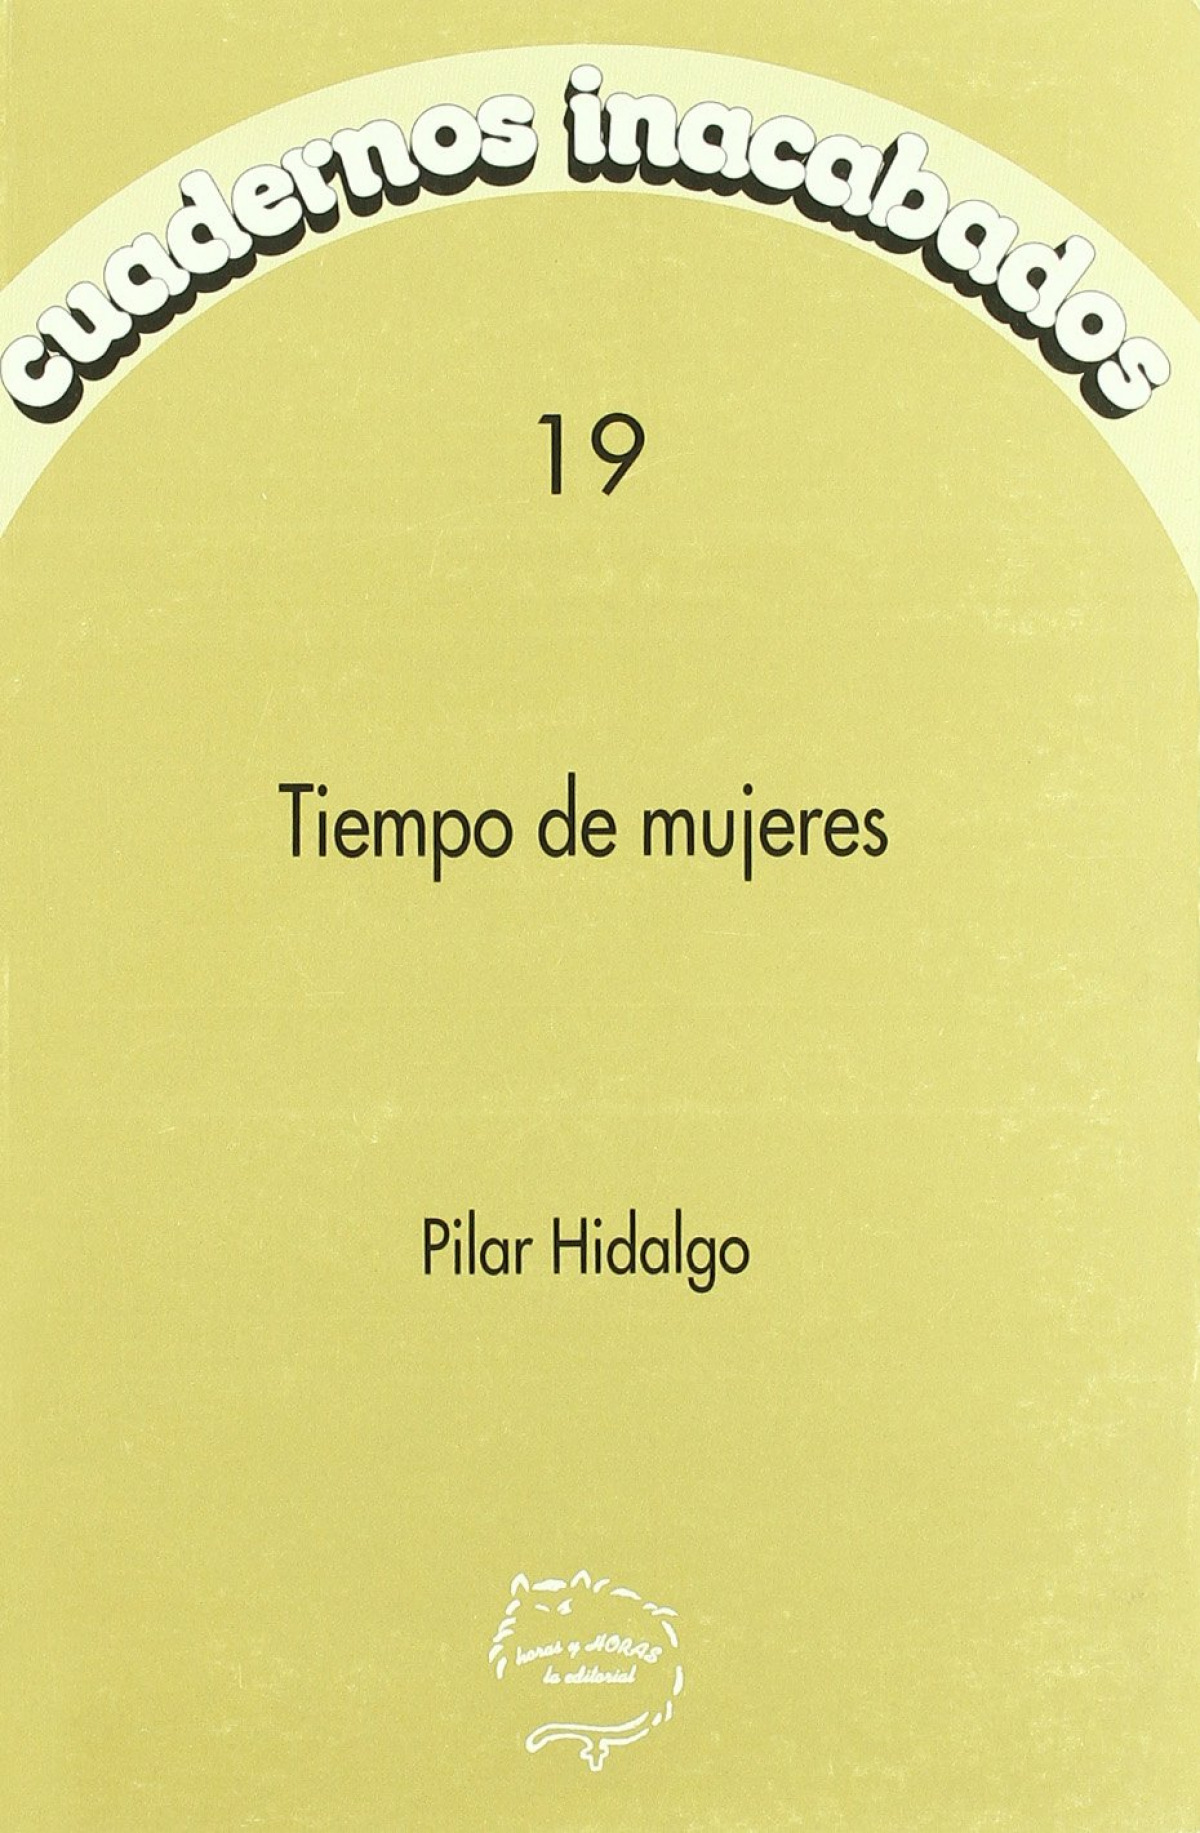 Cuadernos inacabados,19 tiempo mujeres - Hidalgo, Manuel